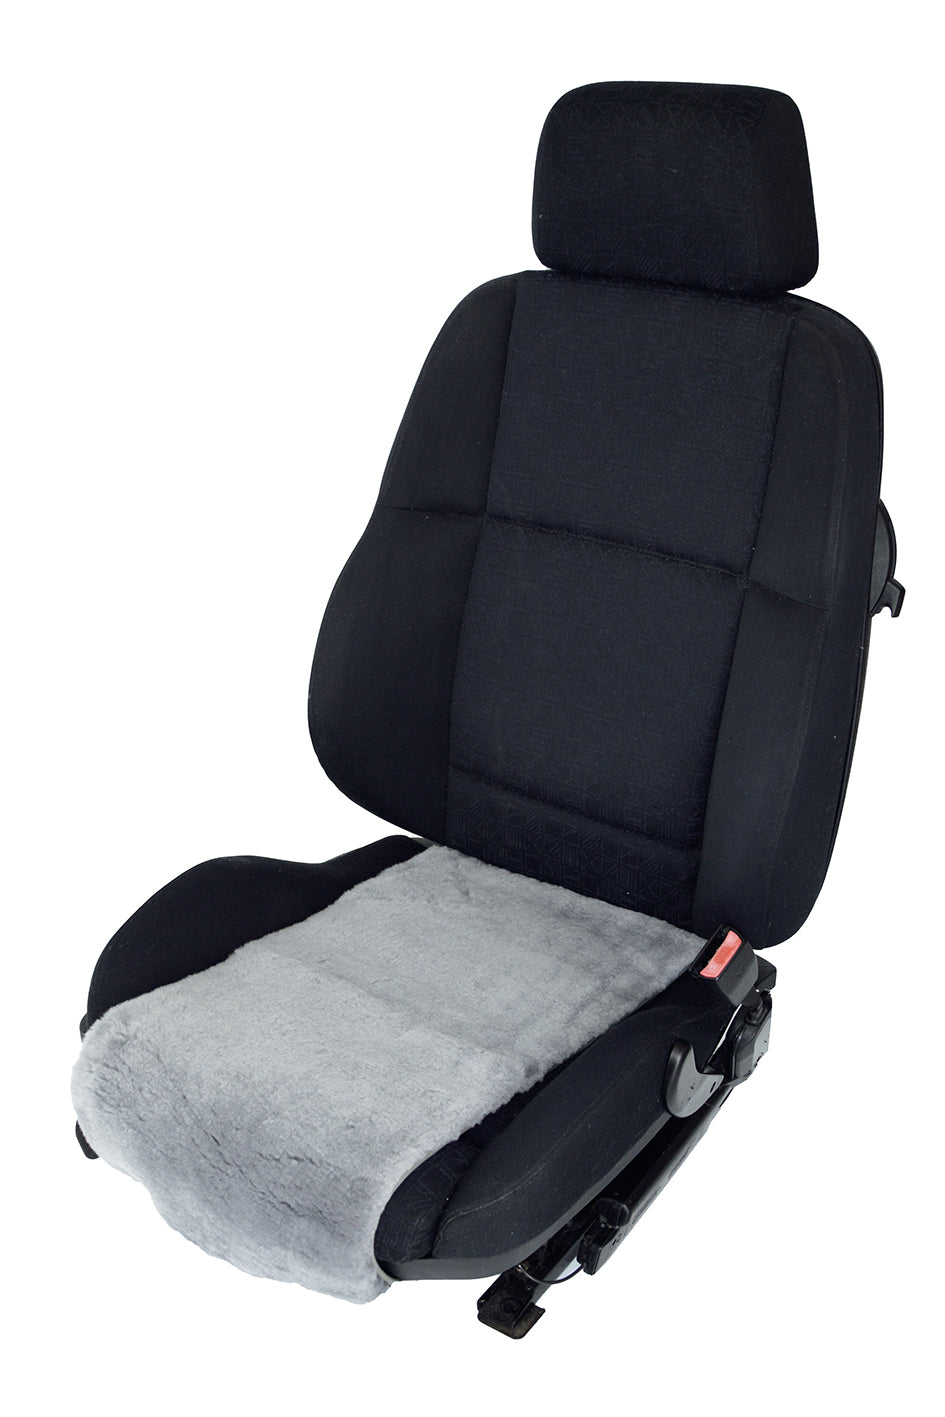 2x Sitzauflage Sitzaufleger Grau Schwarz Autositzauflage Autositz